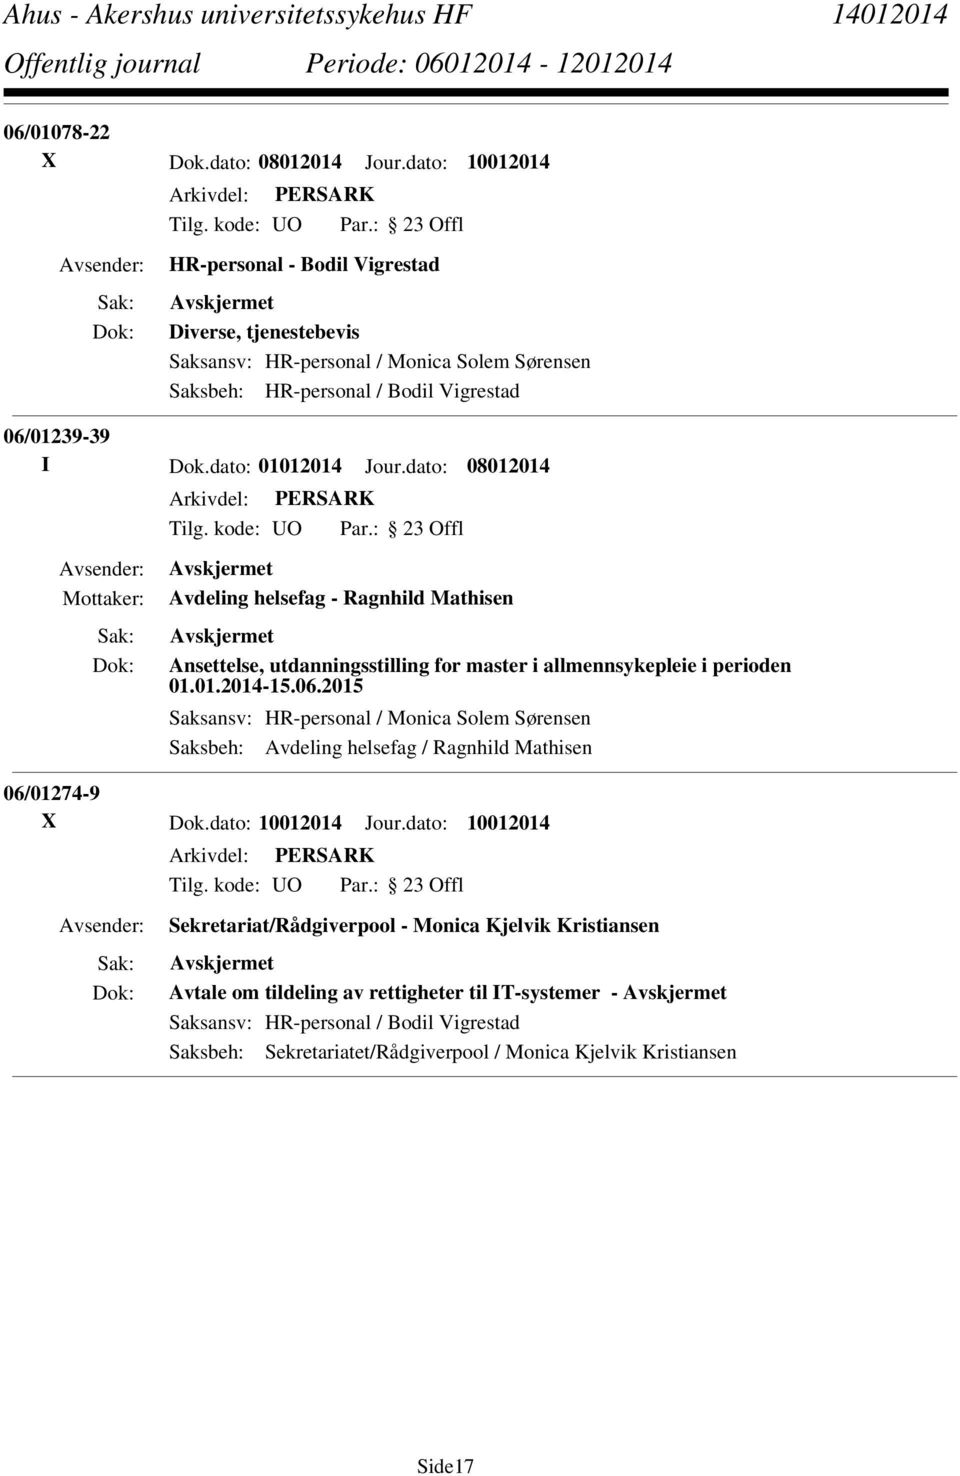 dato: 01012014 Jour.dato: 08012014 Avdeling helsefag - Ragnhild Mathisen Ansettelse, utdanningsstilling for master i allmennsykepleie i perioden 01.01.2014-15.06.